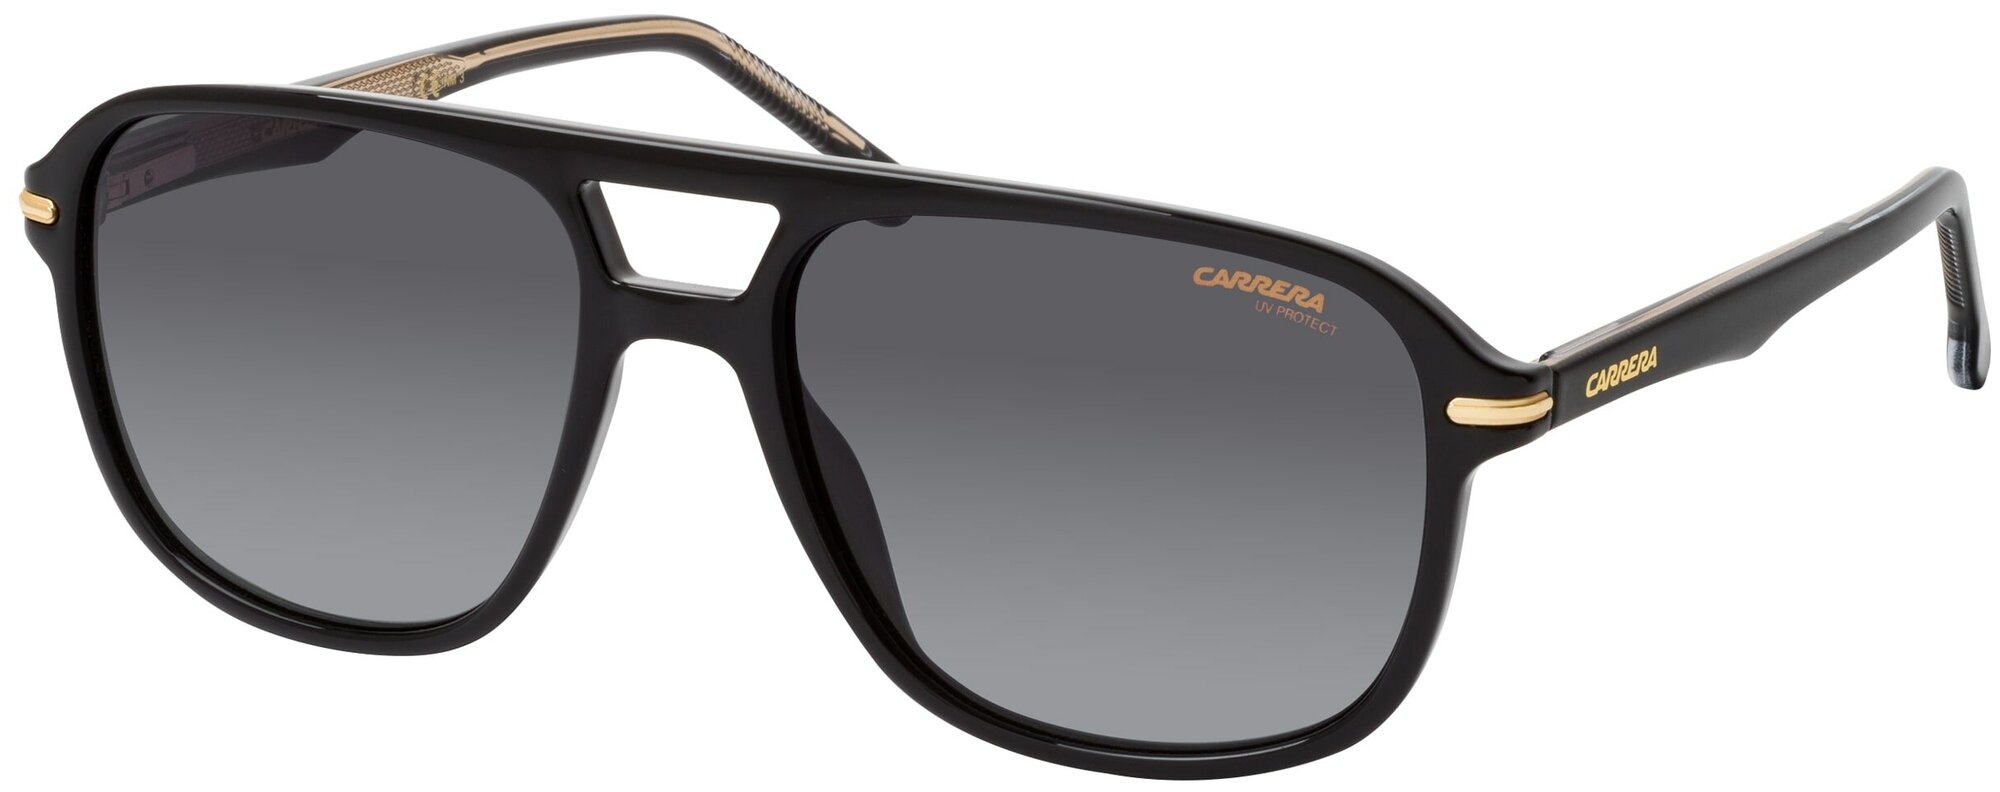 Солнцезащитные очки Carrera Carrera 279/S 2M2 9O 